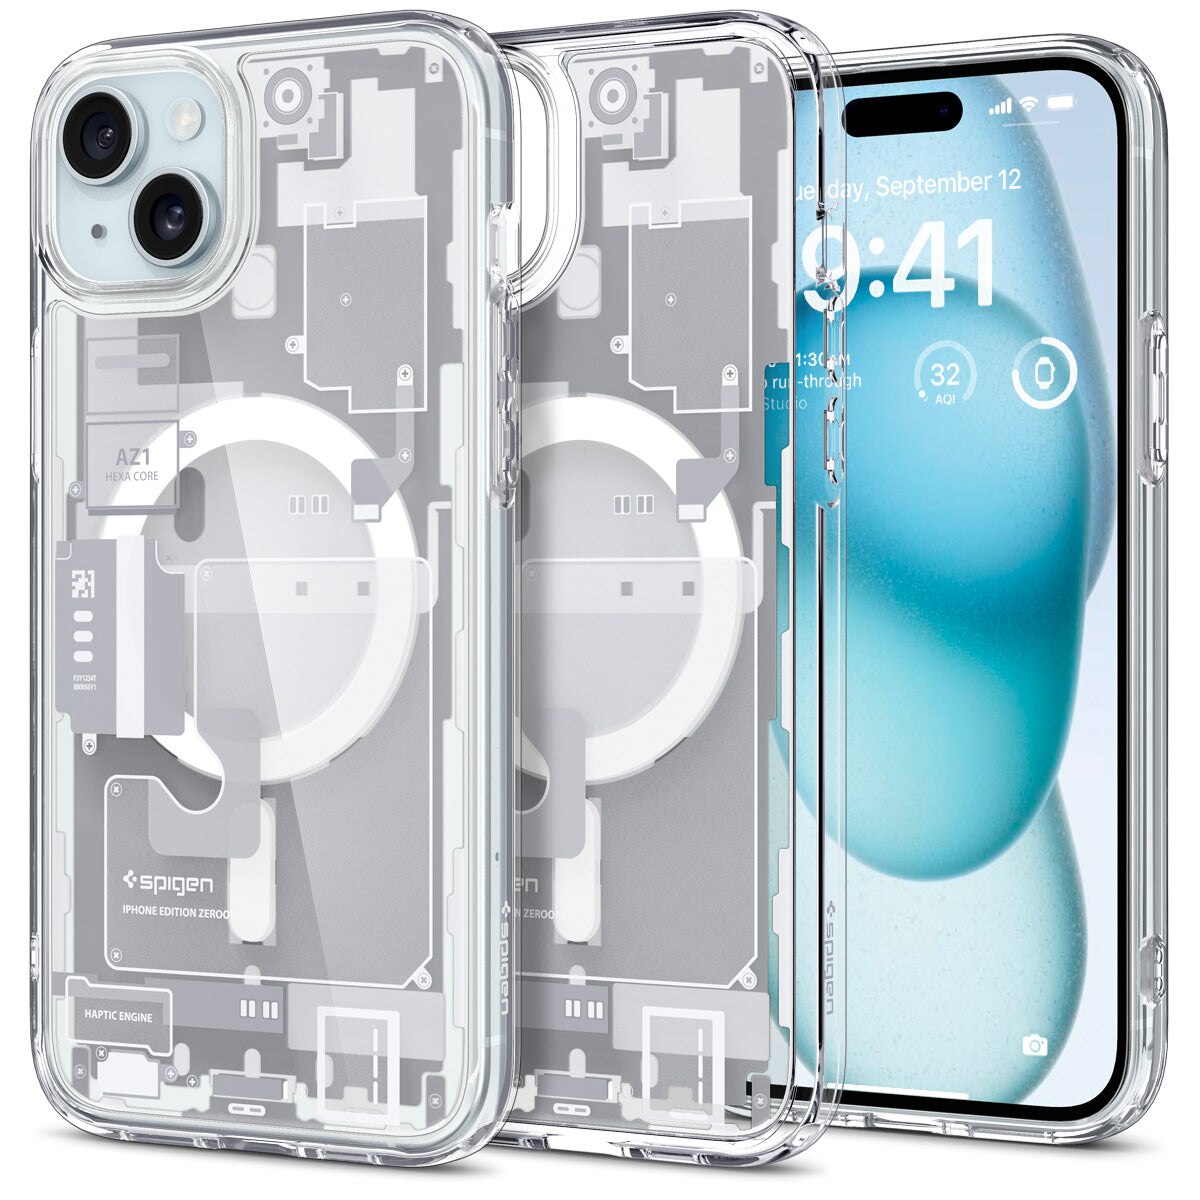 Case Ultra Hybrid MagSafe iPhone 15 Plus Zero One